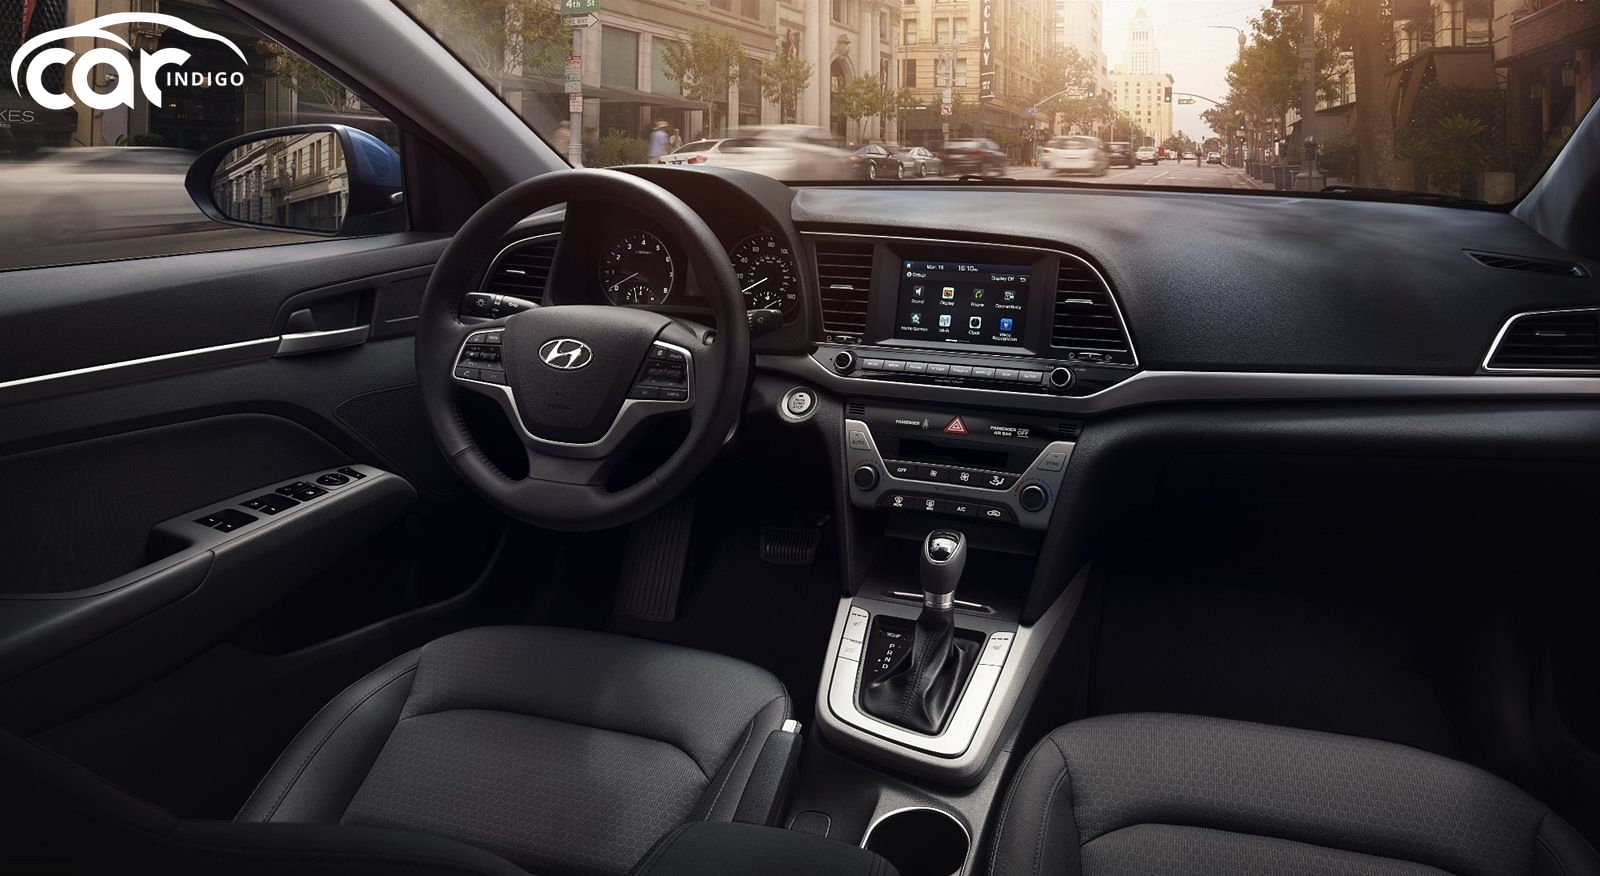 2018 Hyundai Elantra Interior Review - Seating, Infotainment, Dashboard and  Features | CarIndigo.com